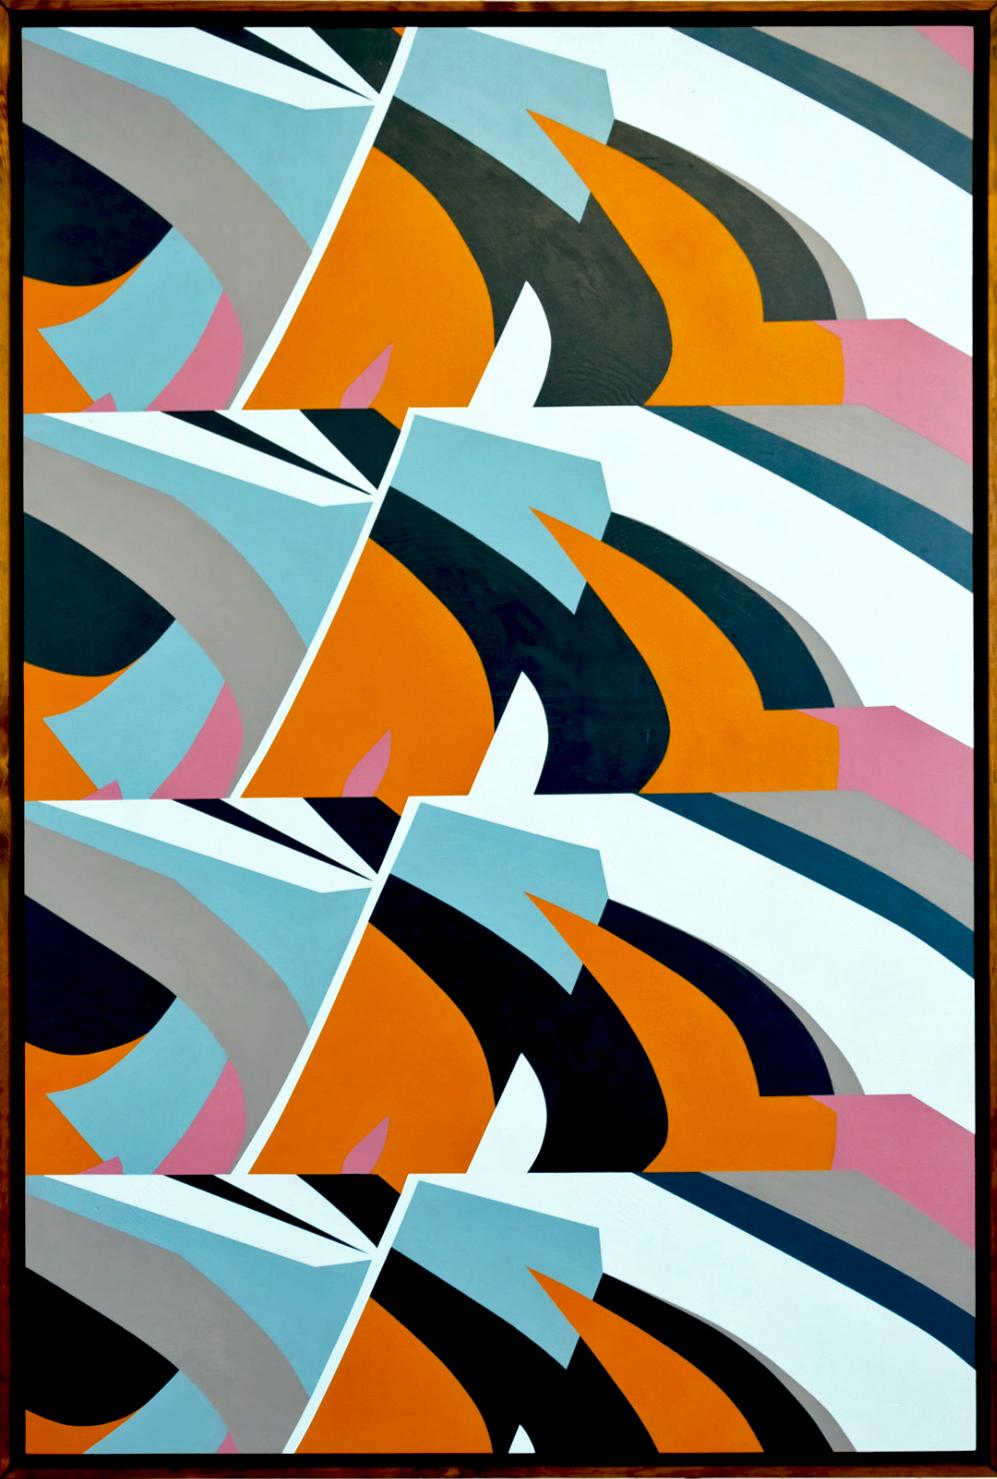 Waves by Kera - Abstraction géométrique contemporaine en noir et blanc